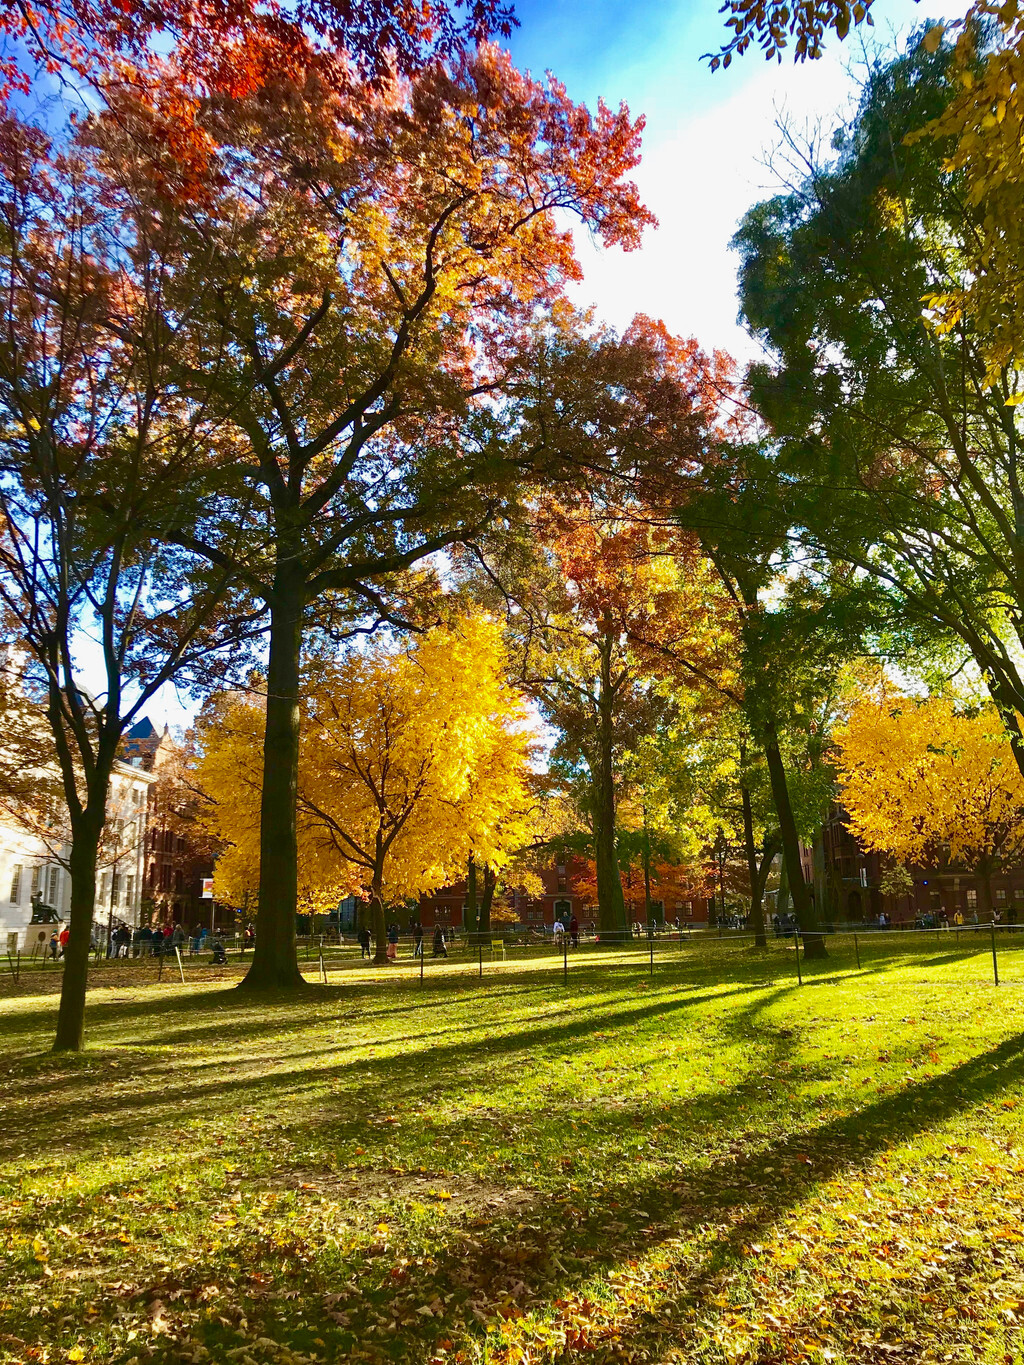 美国藤校校园风光欣赏:深秋的哈佛大学,秋色如画